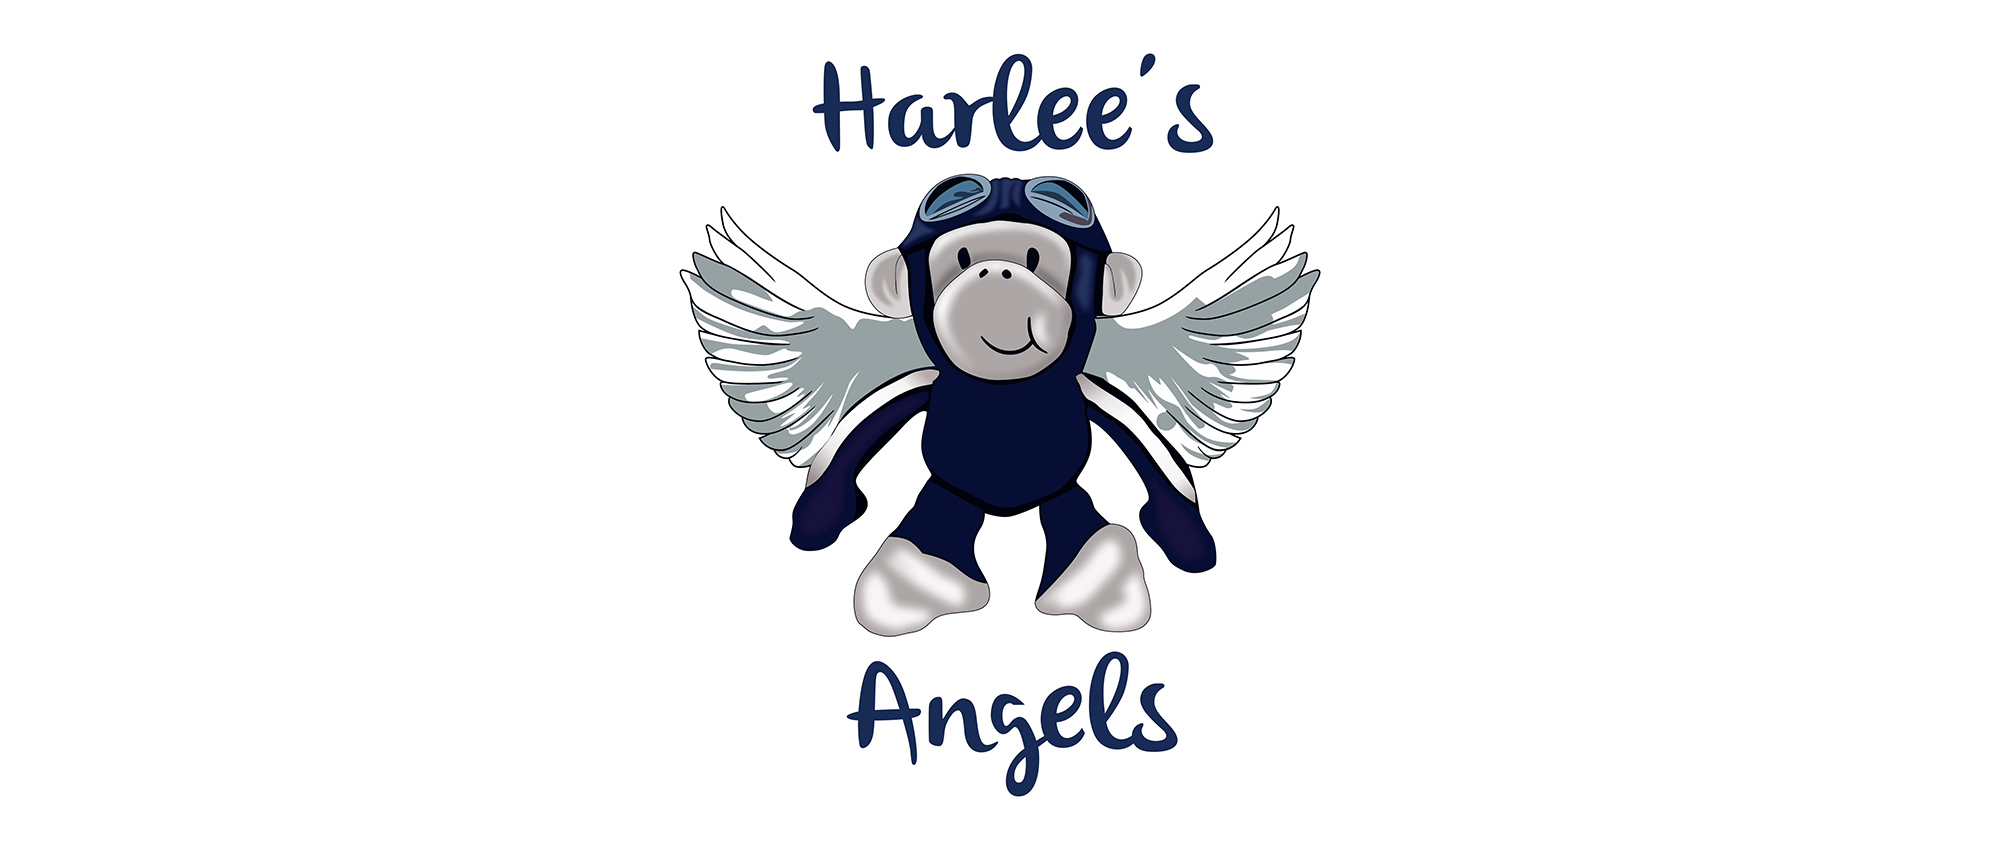 Harlee angel